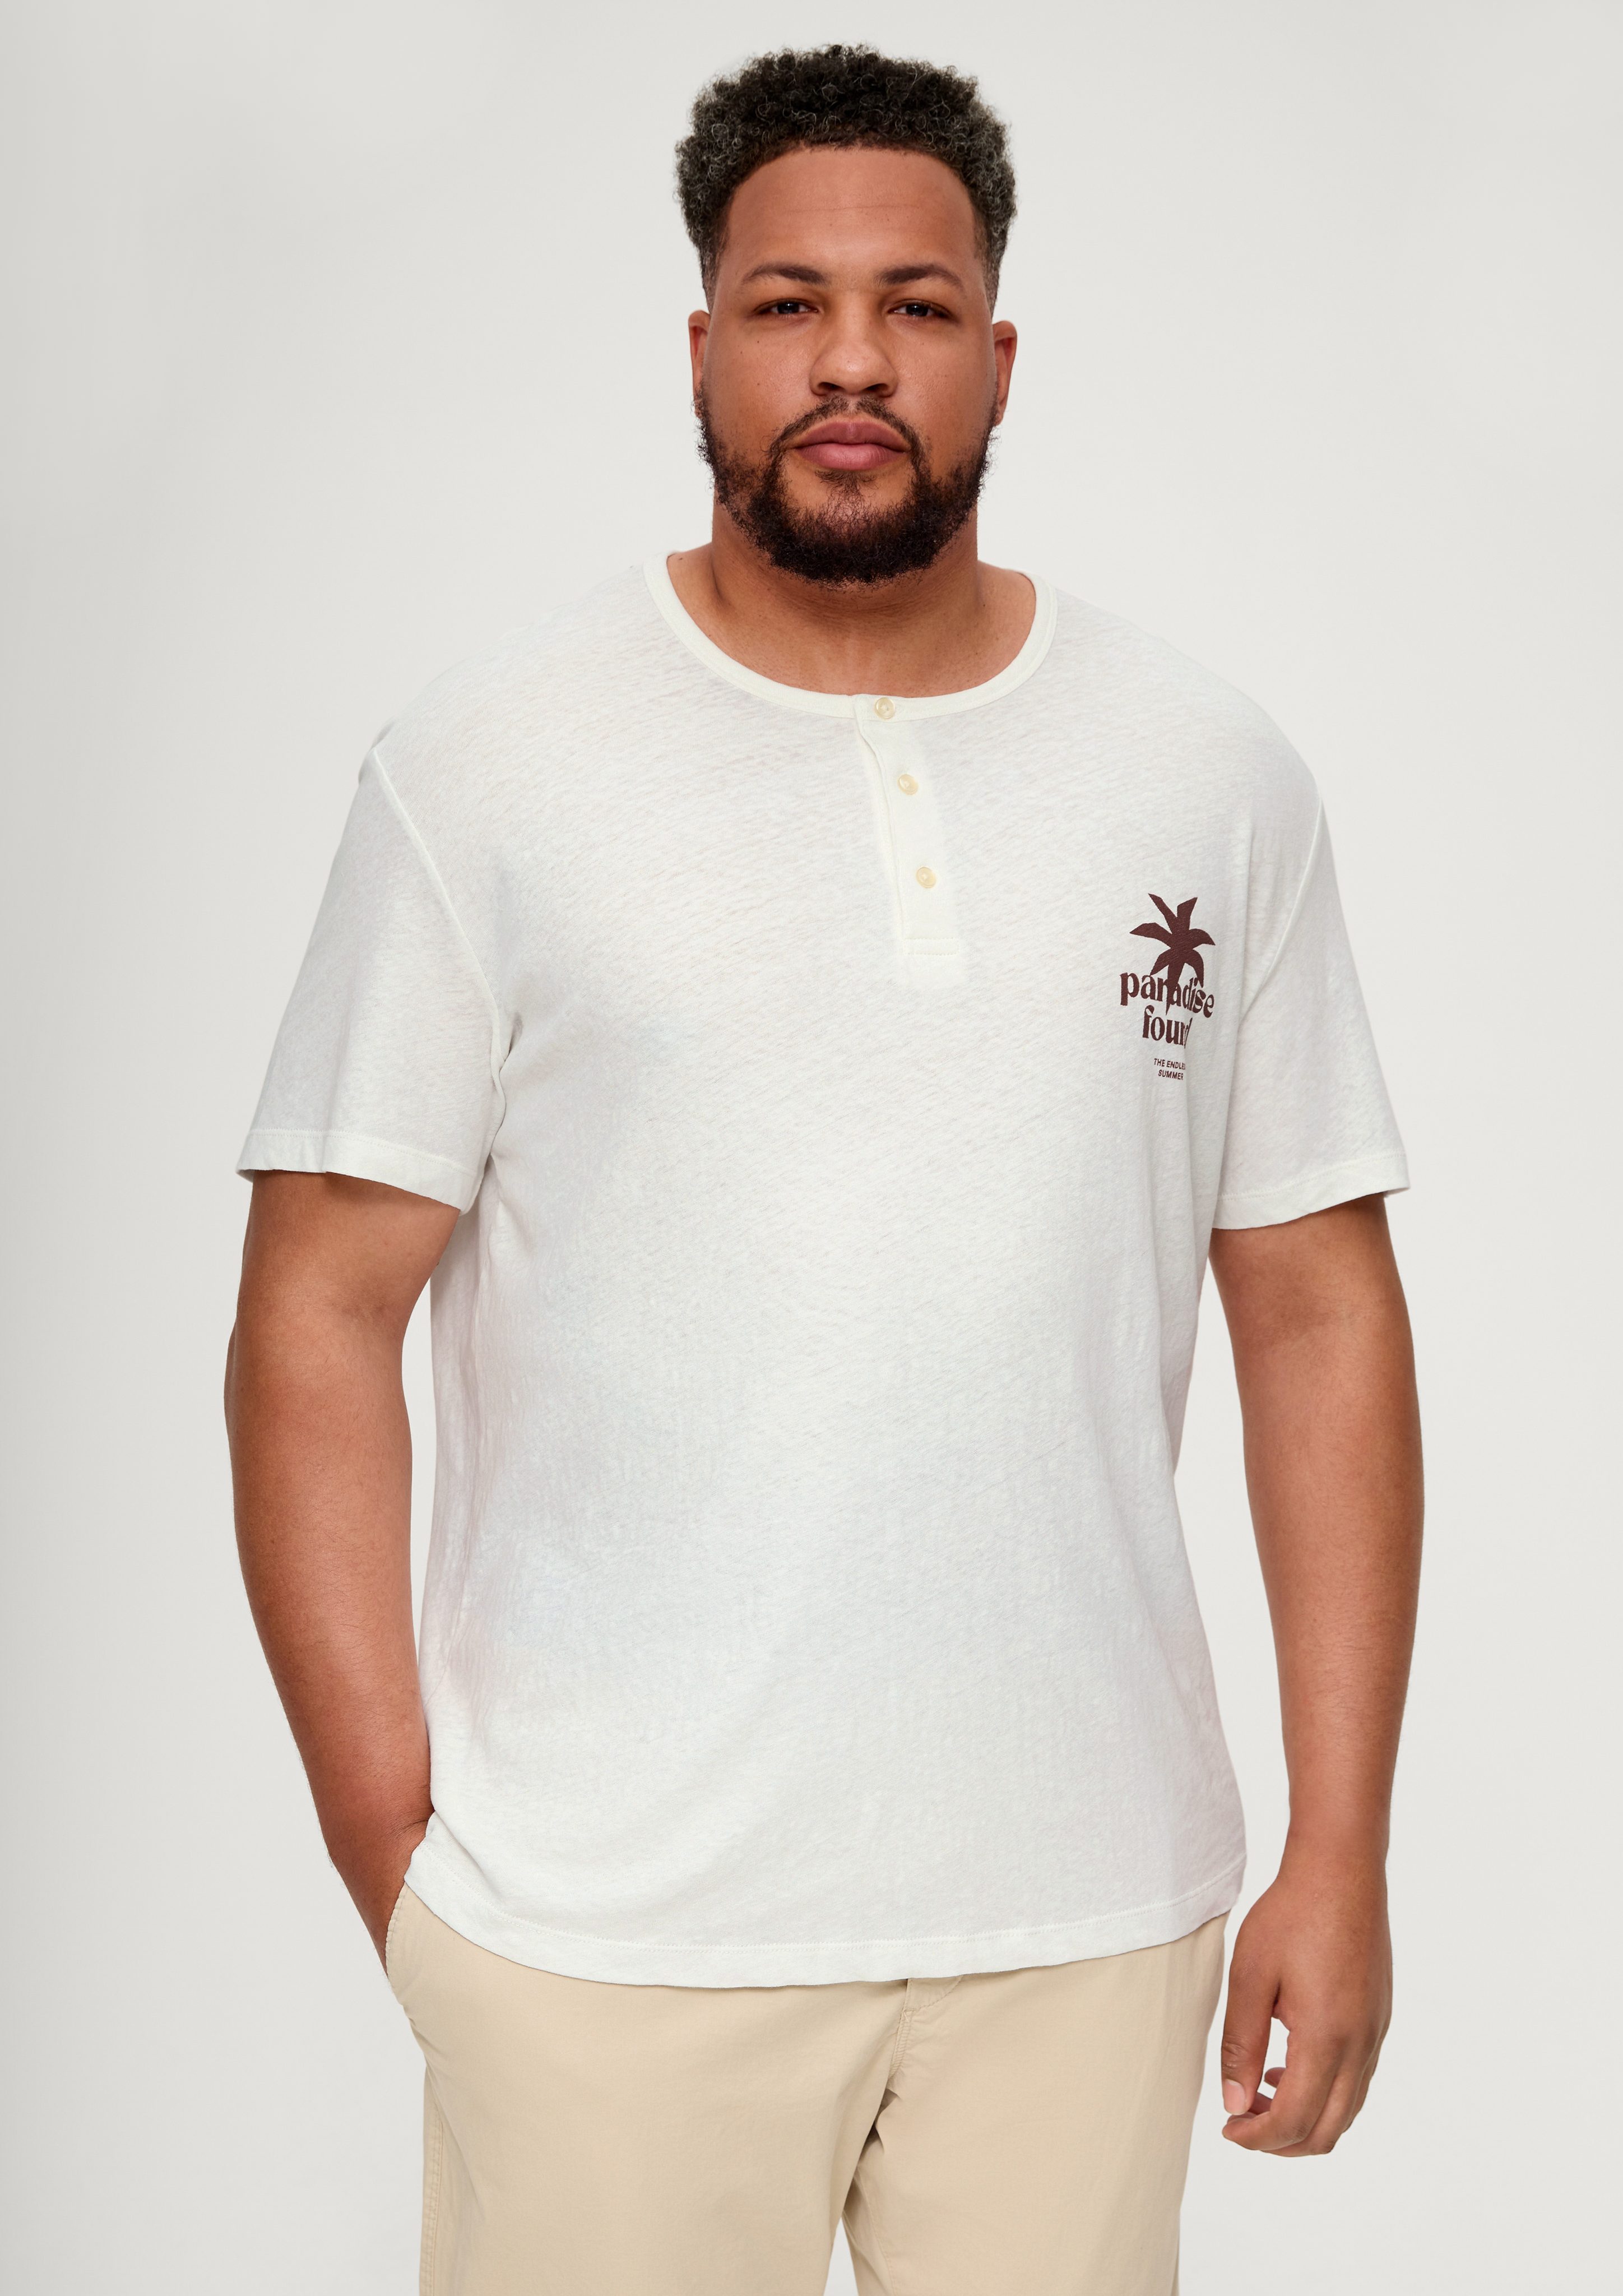 Baumwolle aus und Kurzarmshirt Hanf s.Oliver T-Shirt